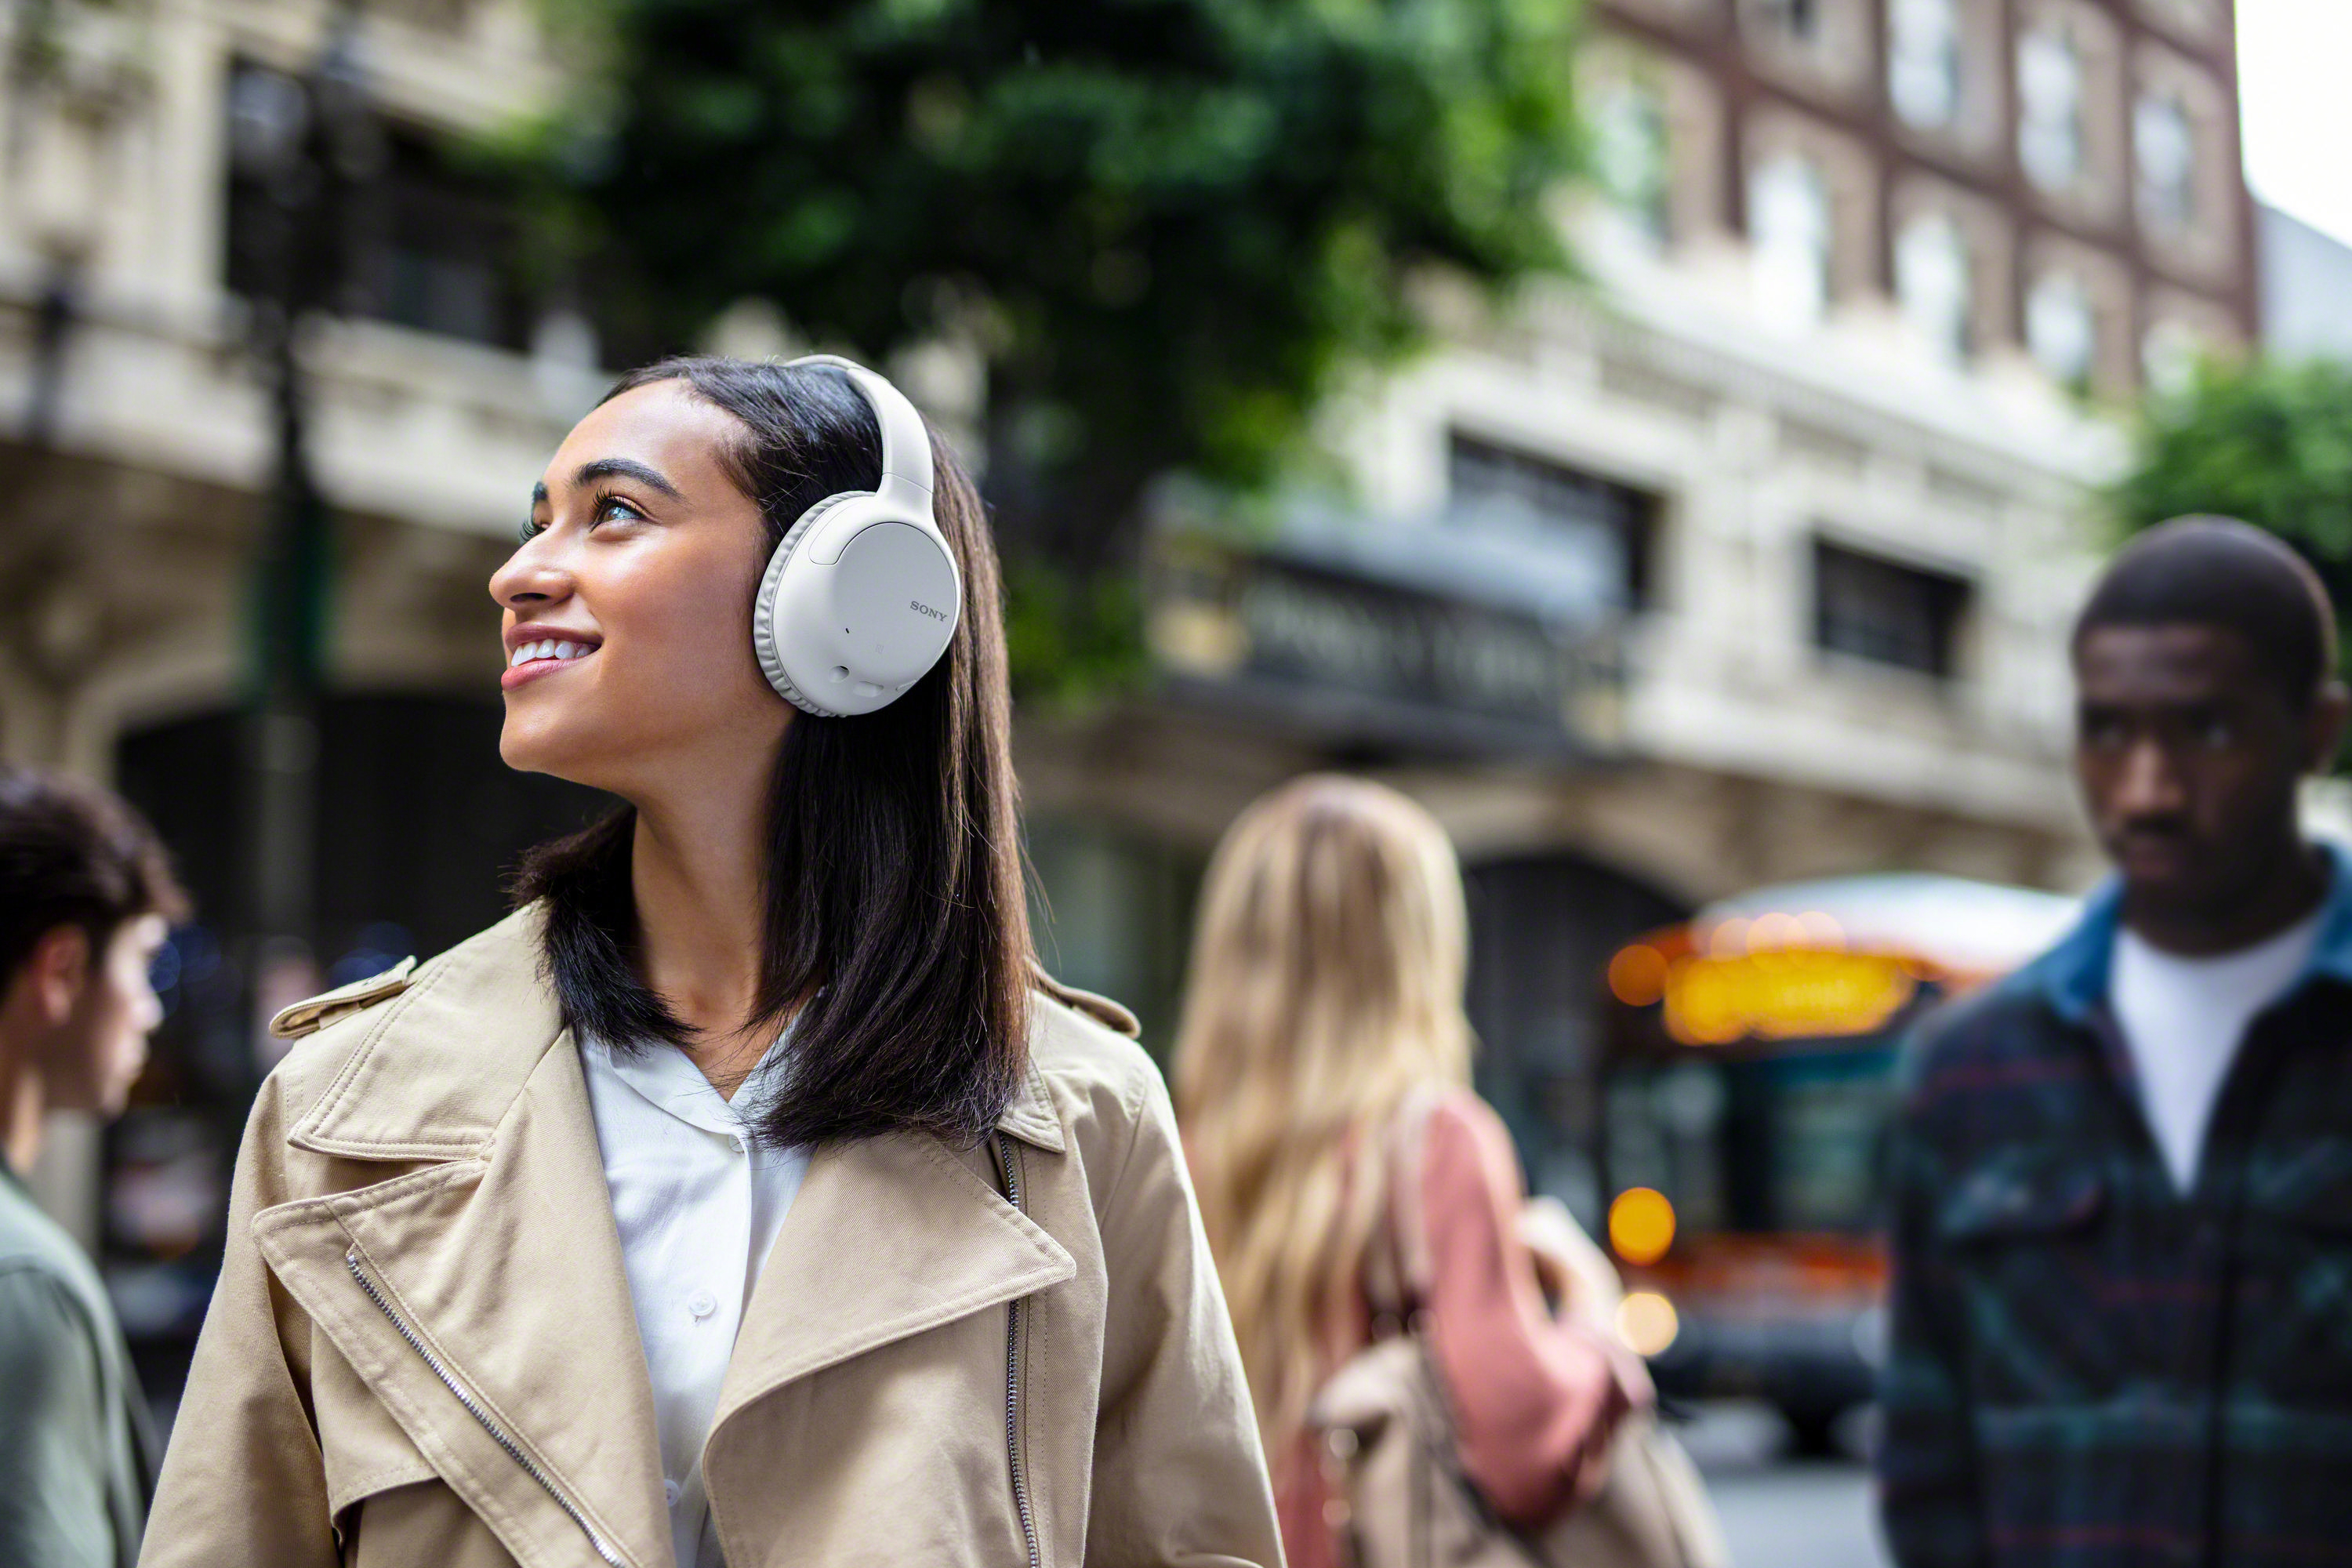 SONY WH-CH710N, Over-ear Kopfhörer Bluetooth Weiß